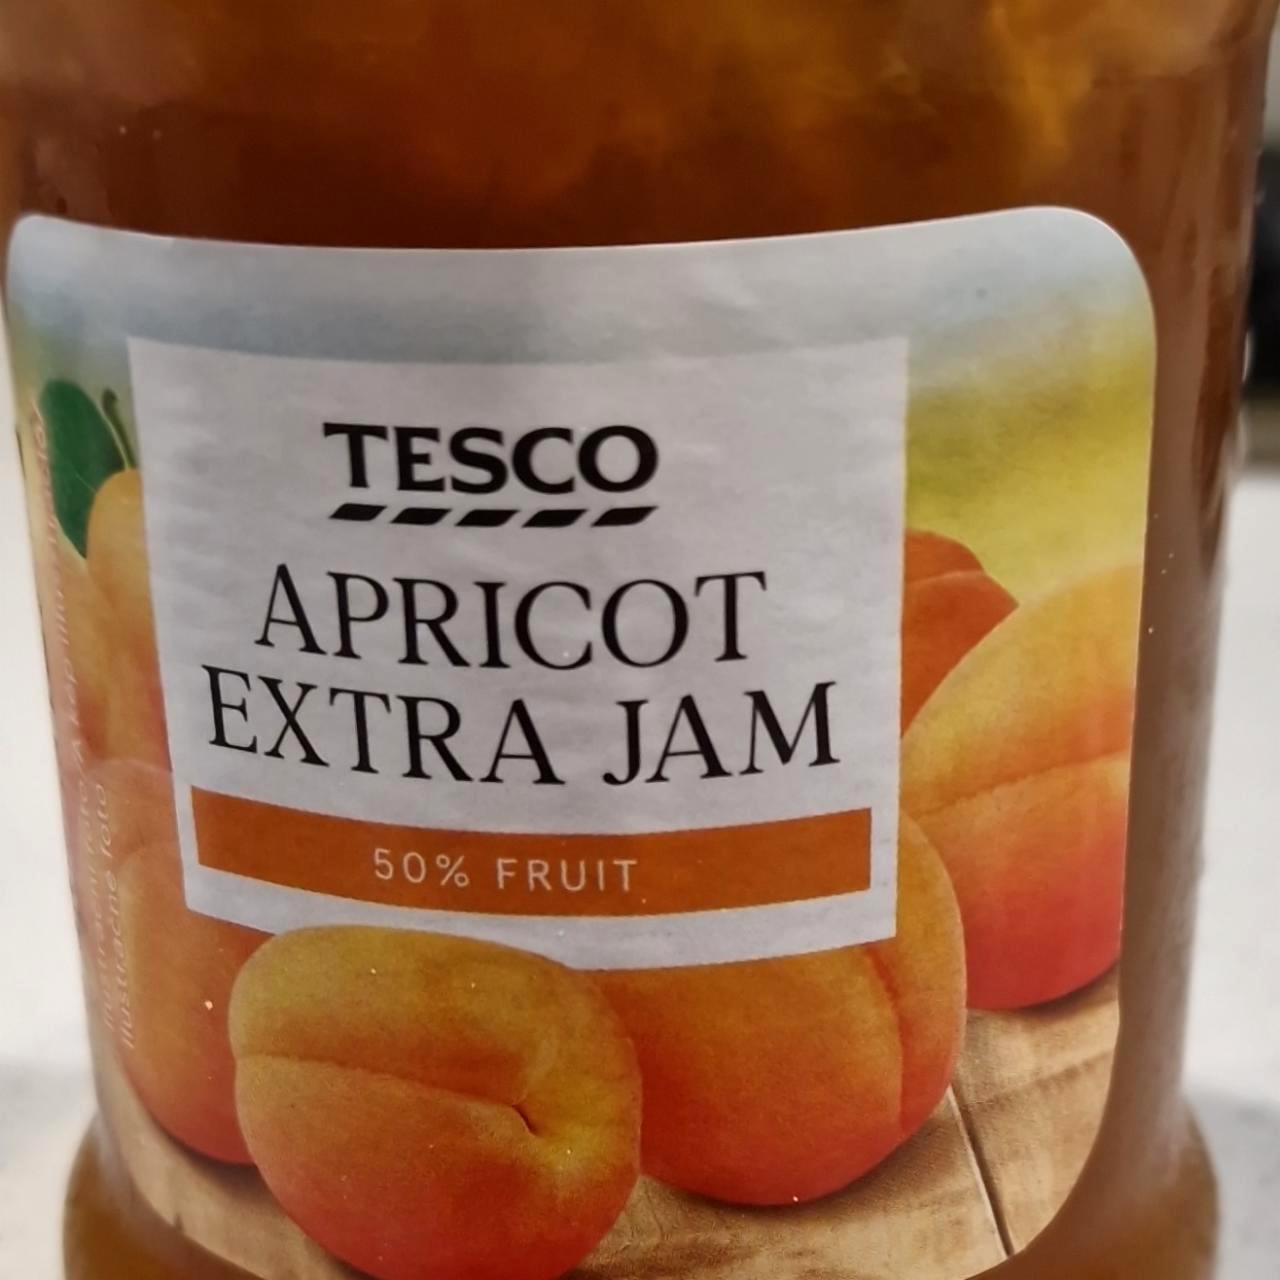 Képek - Apricot extra jam Tesco